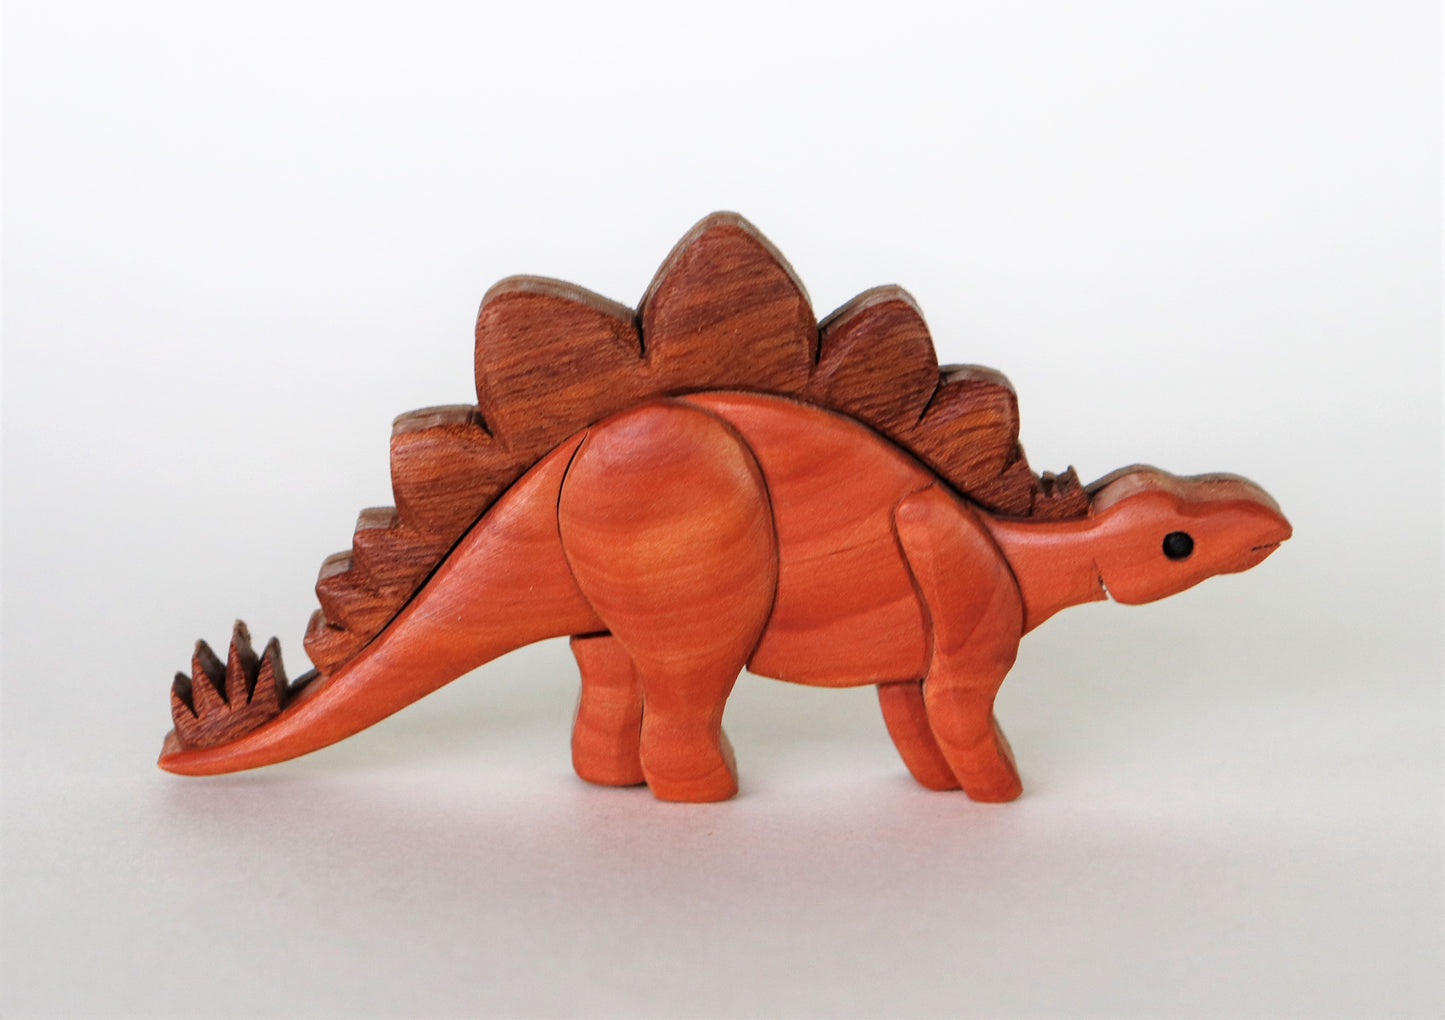 Stegosaurus Dinosaur Magnet / Ornament